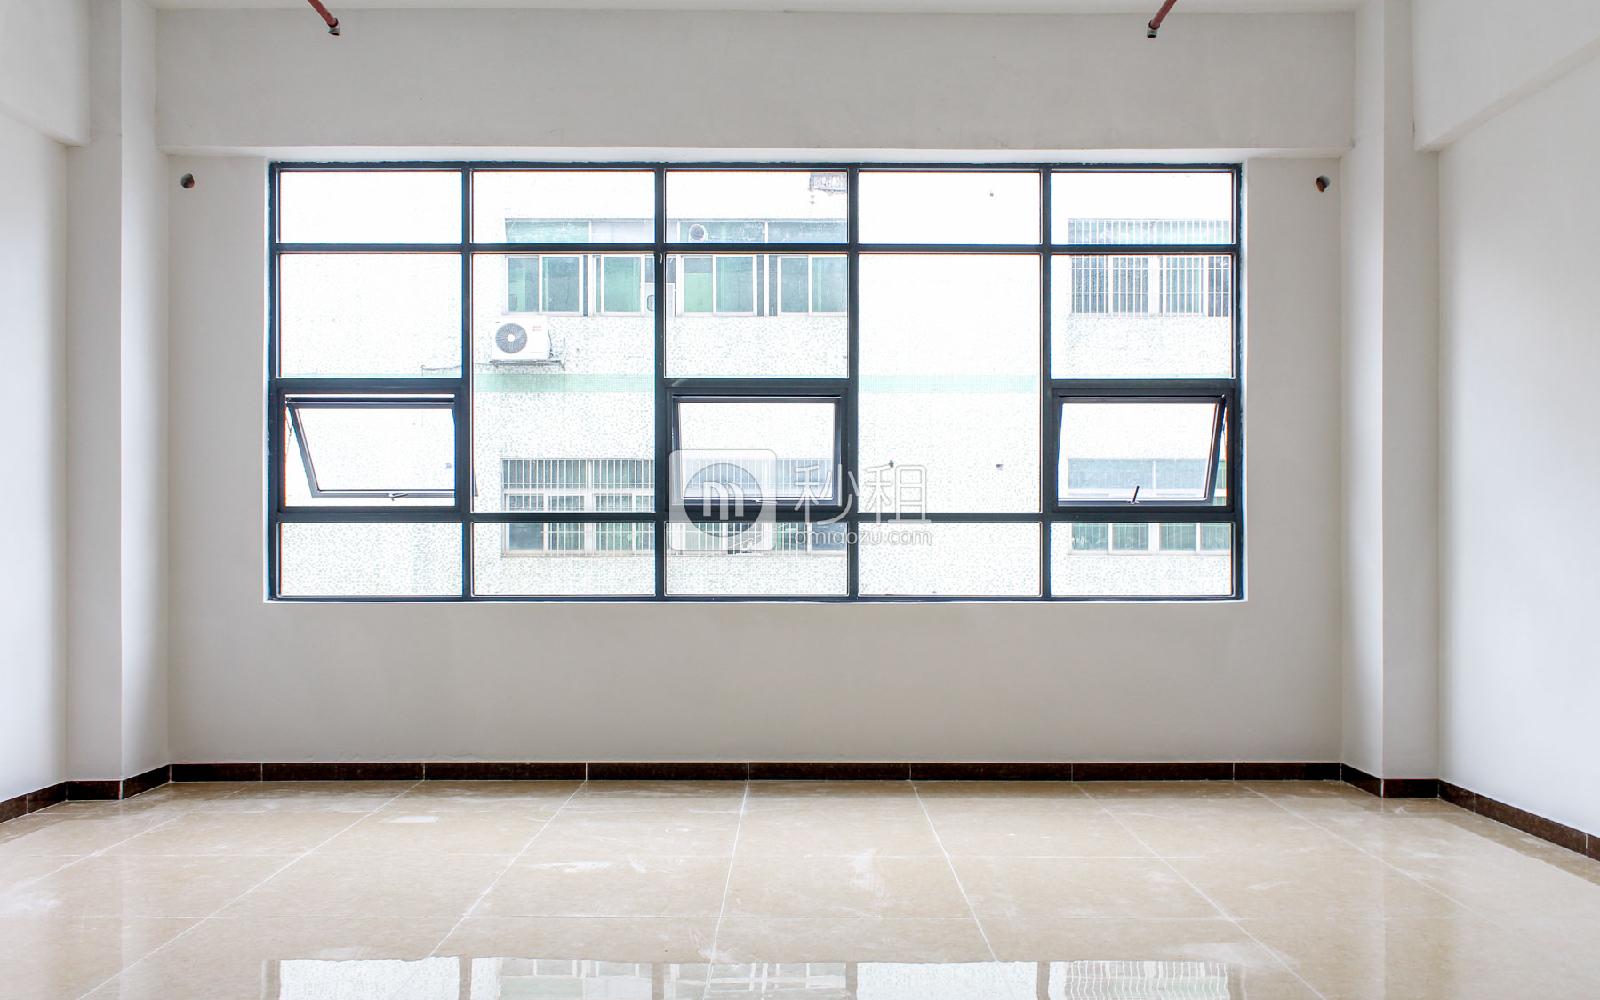 客盛智创大厦写字楼出租119平米简装办公室60元/m².月